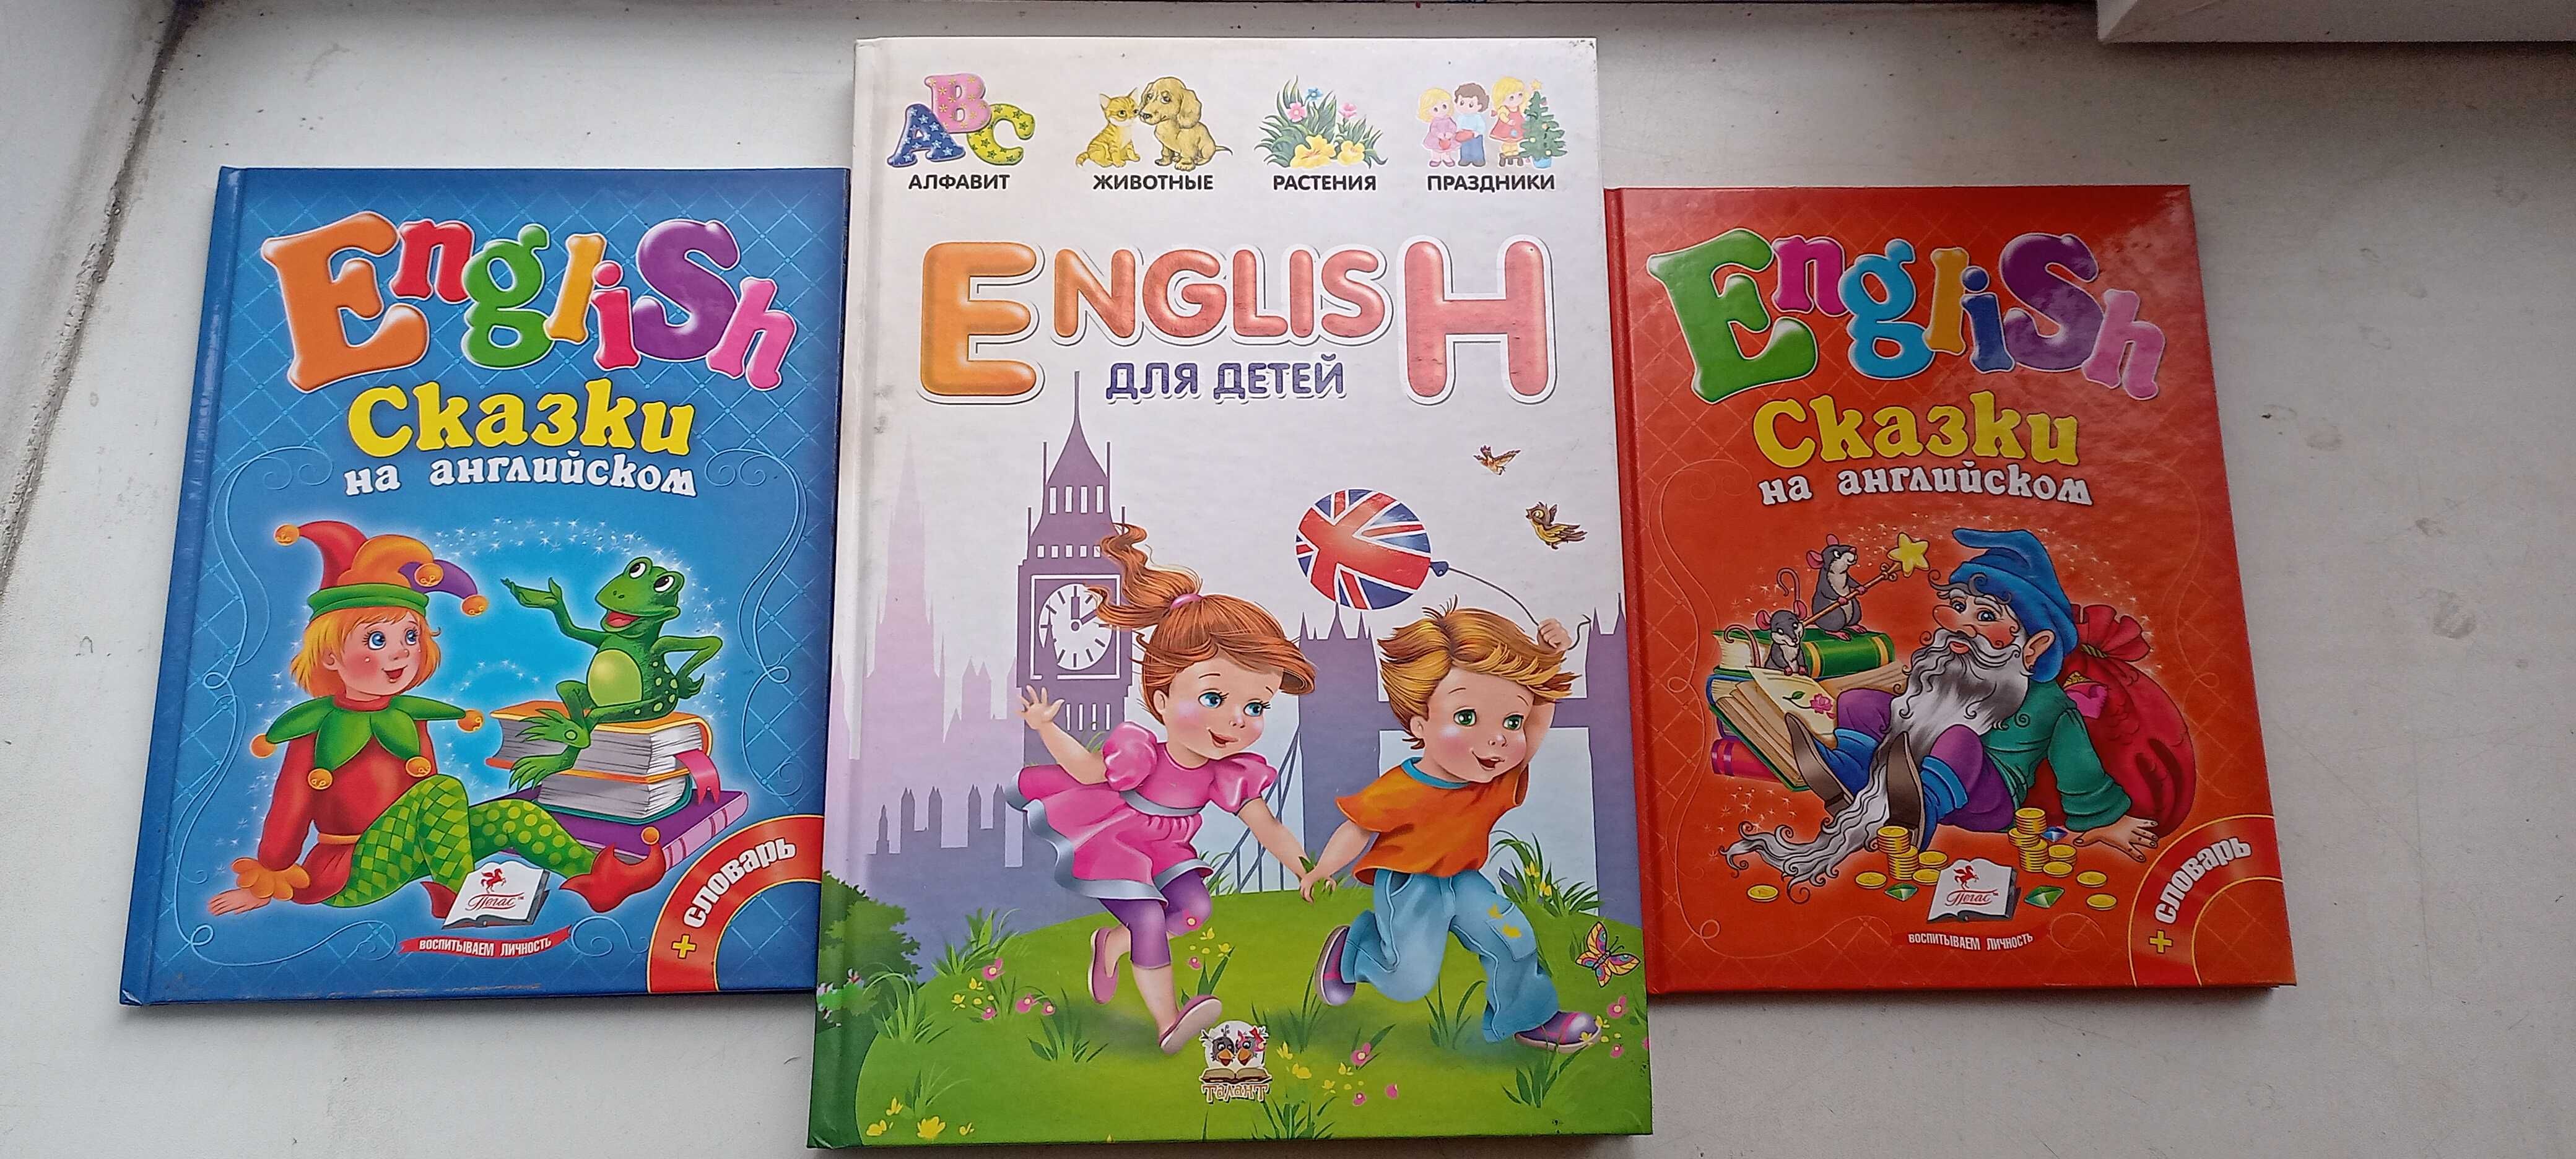 Английский для детей книги